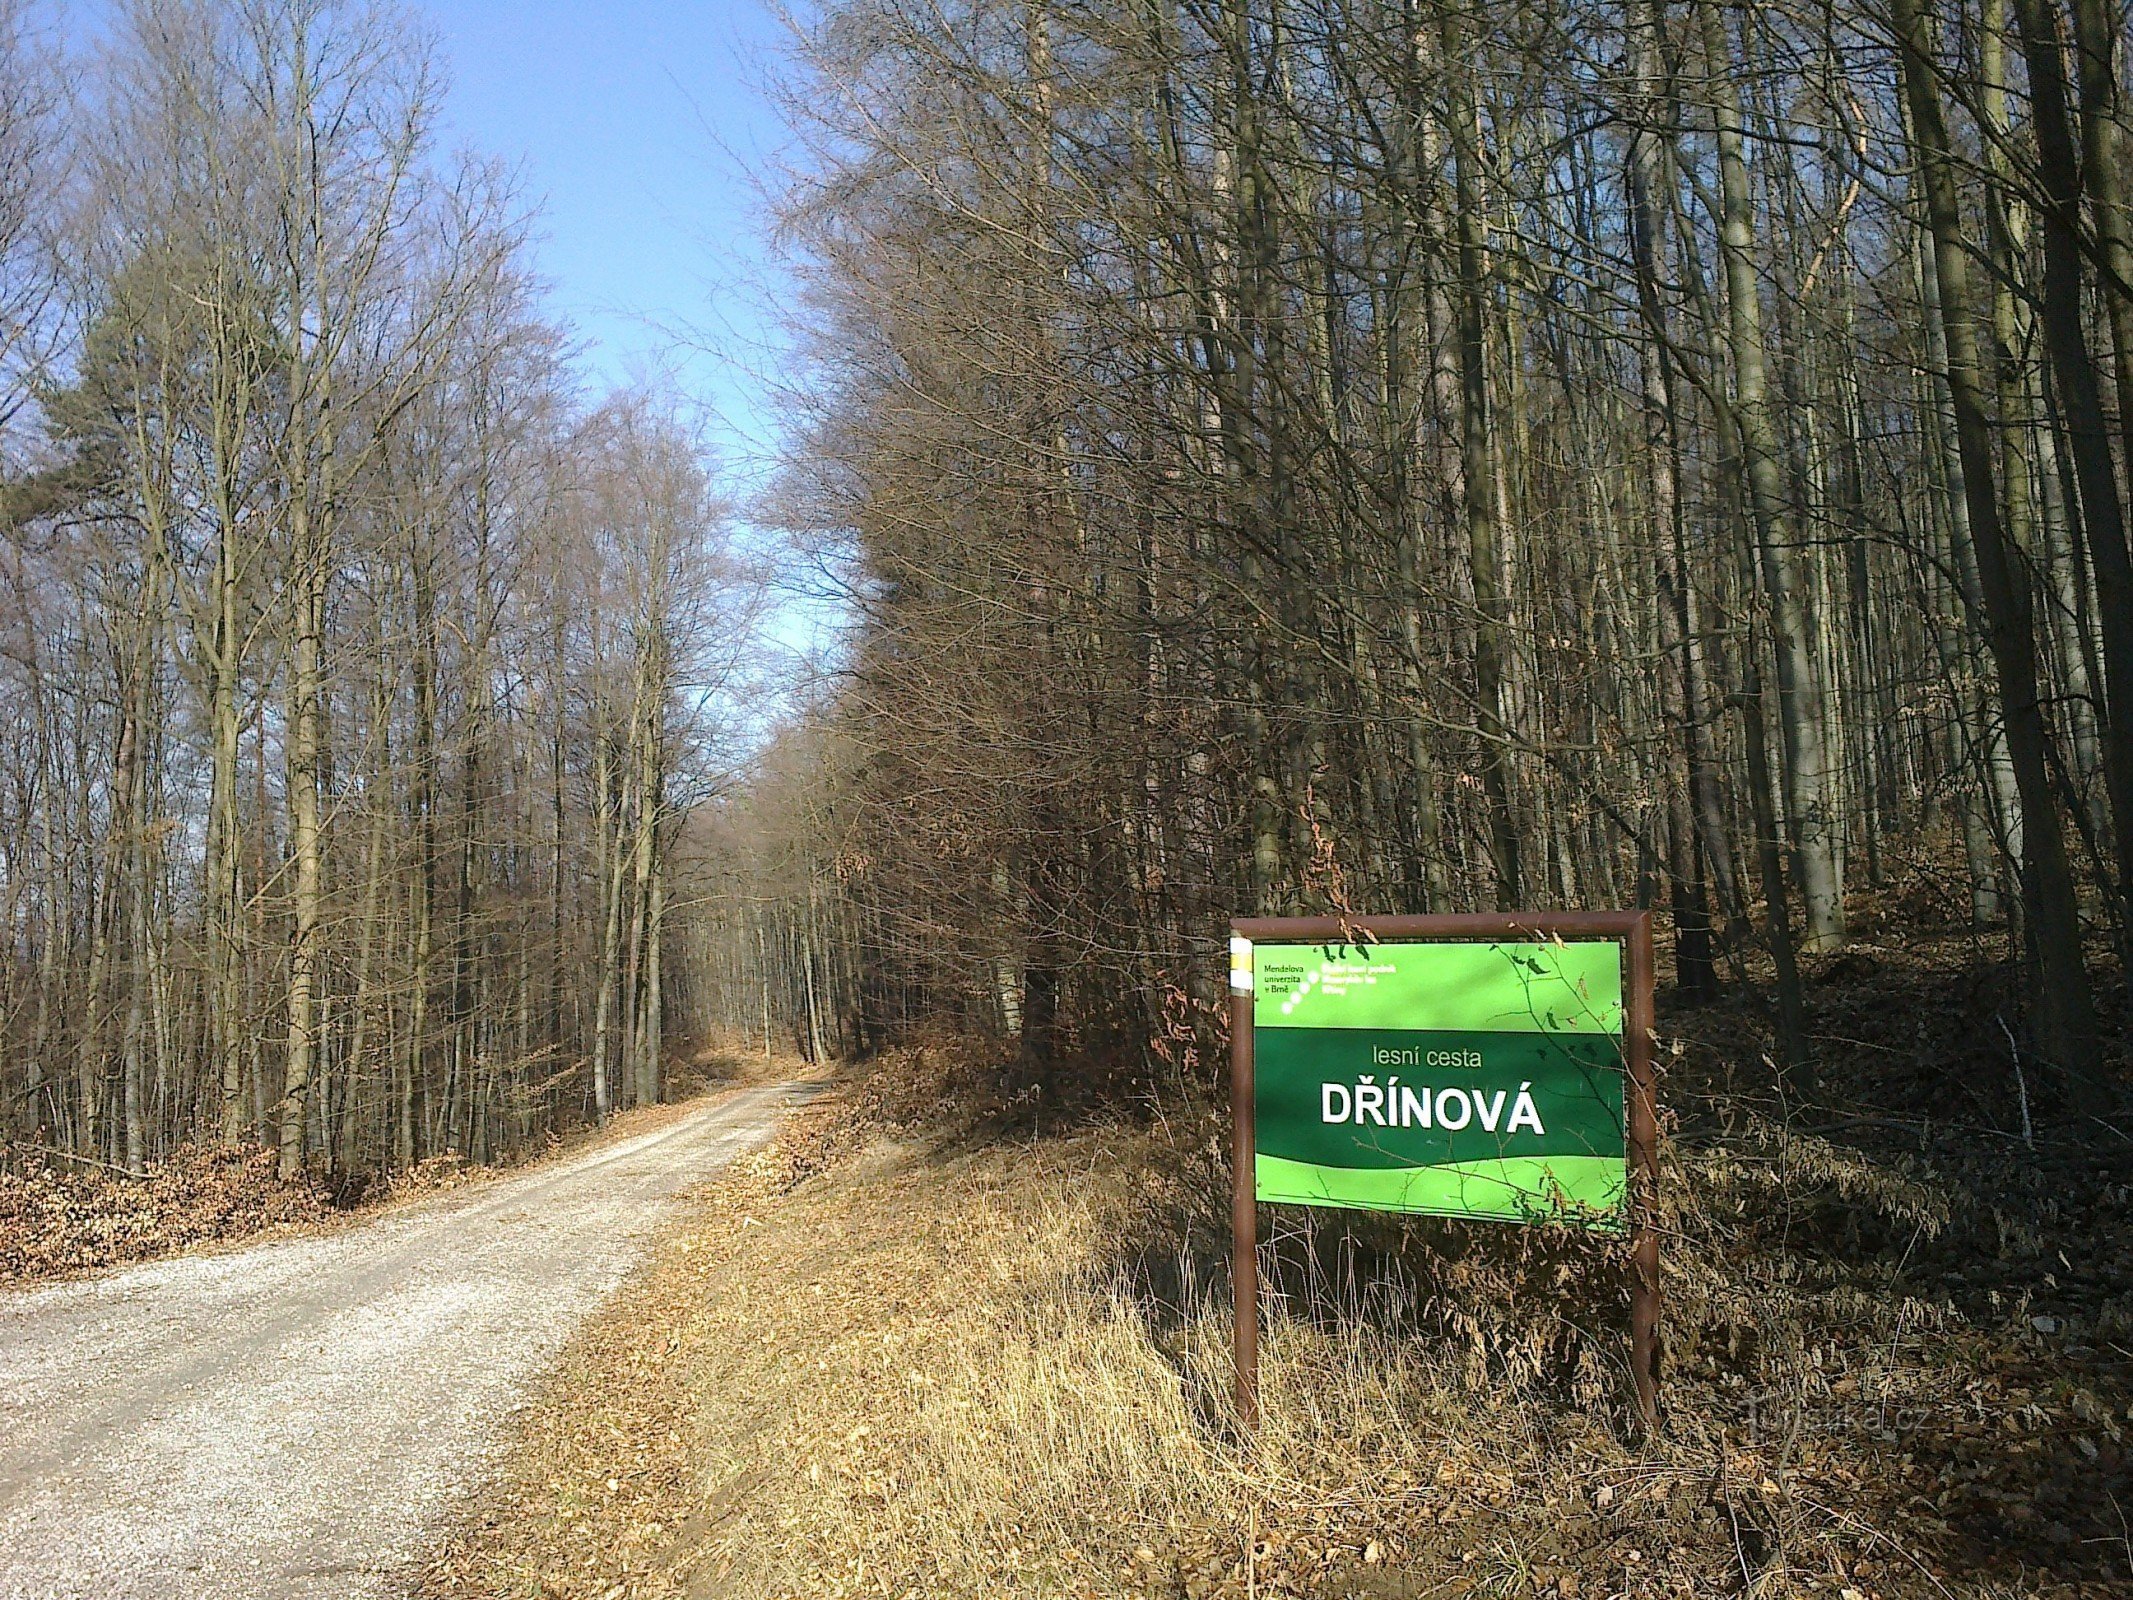 O sistema de caminhos florestais da Escola e Empresa Florestal de Křtiny